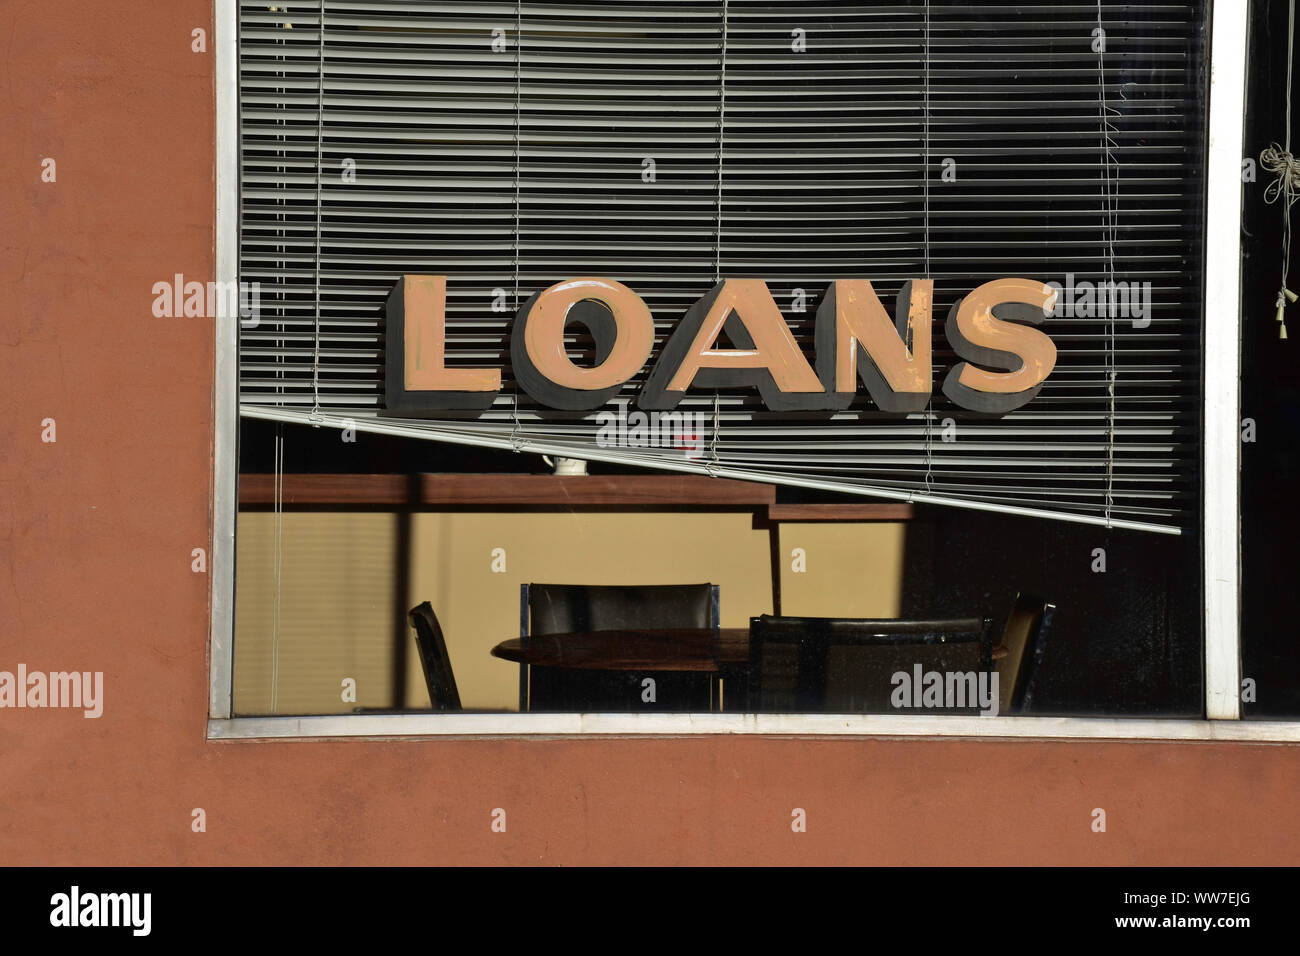 Une scène tranquille dans une petite ville montre un signe de prêts dans la fenêtre d'une boutique de services financiers. Banque D'Images